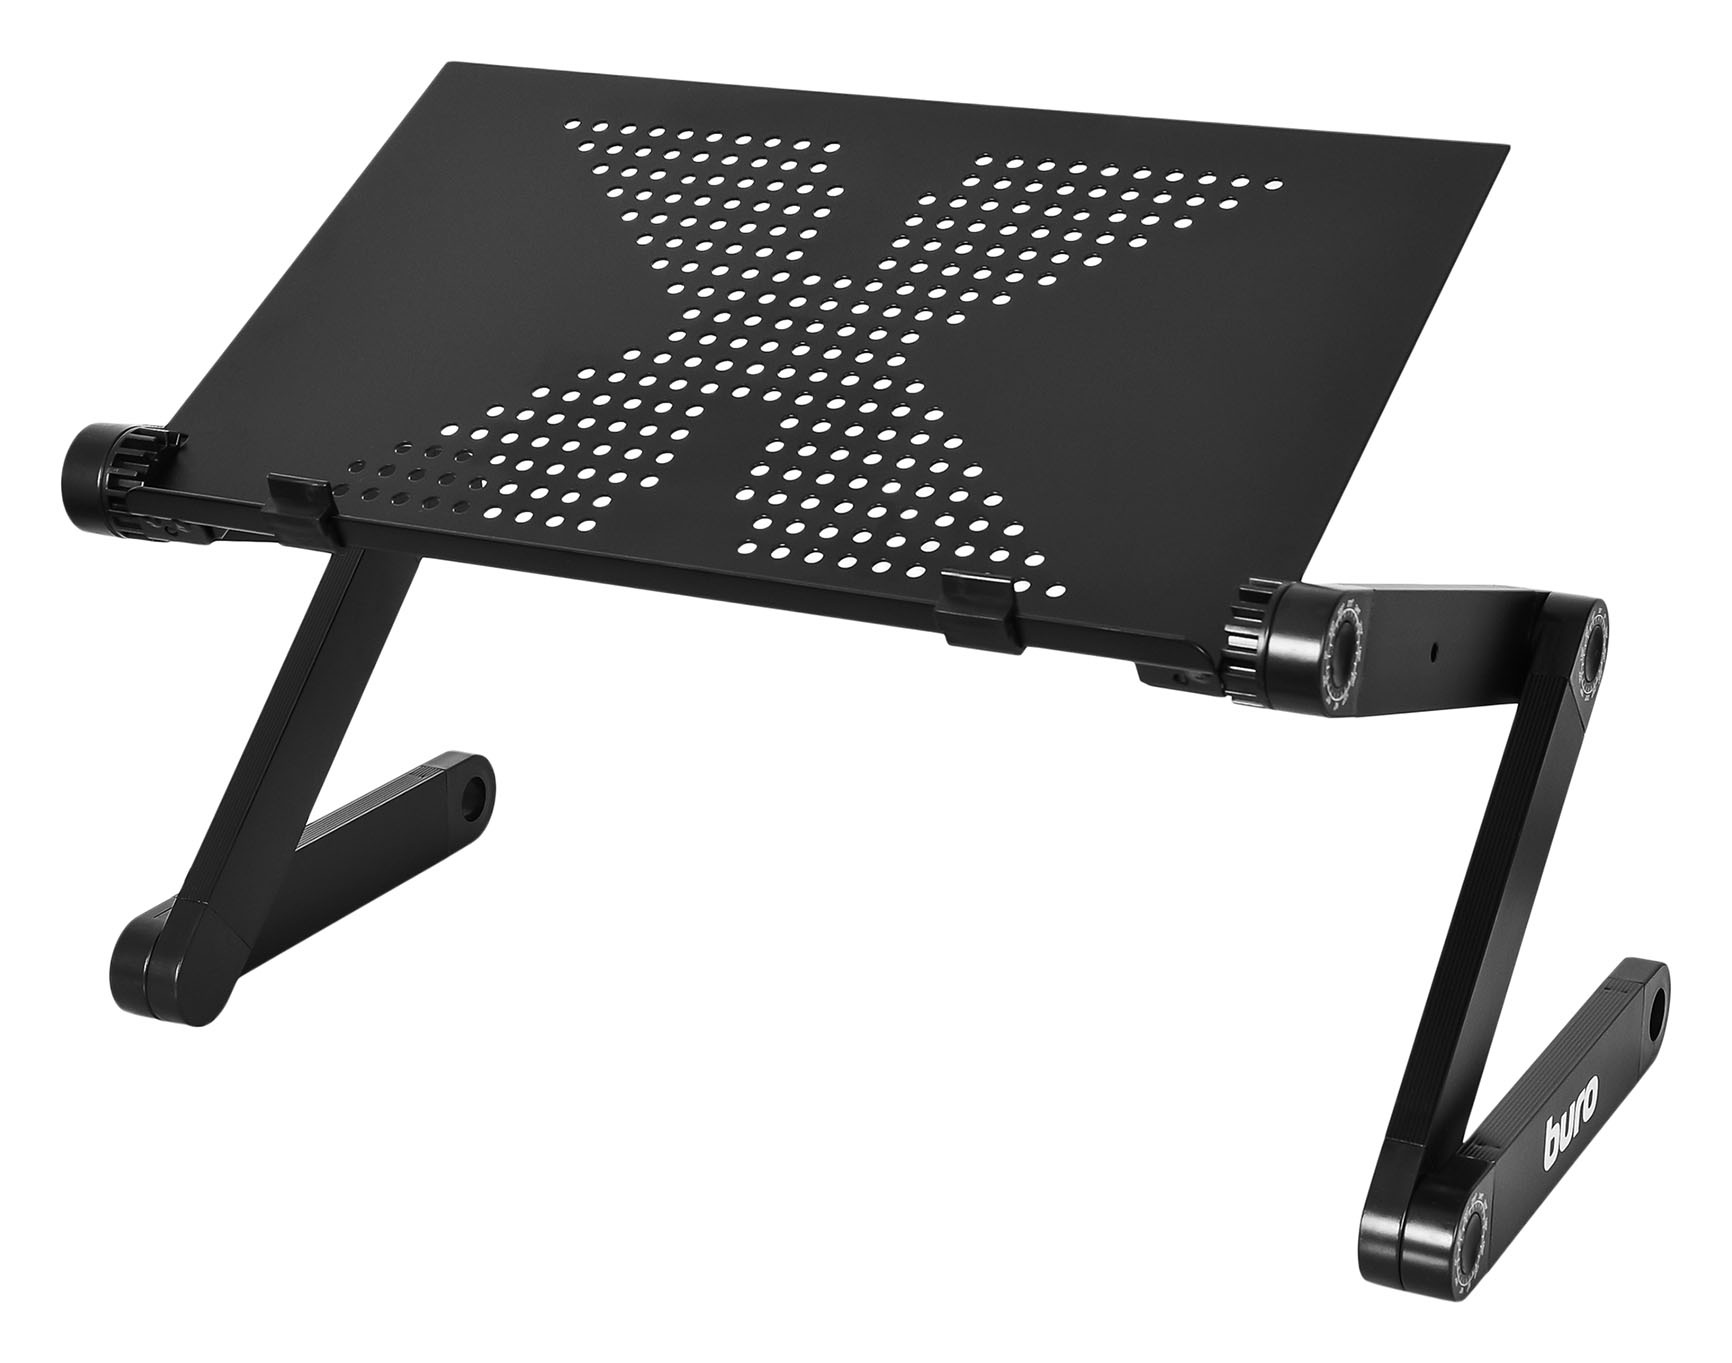 Стол для ноутбука Buro BU-807 столешница металл черный 42x26см